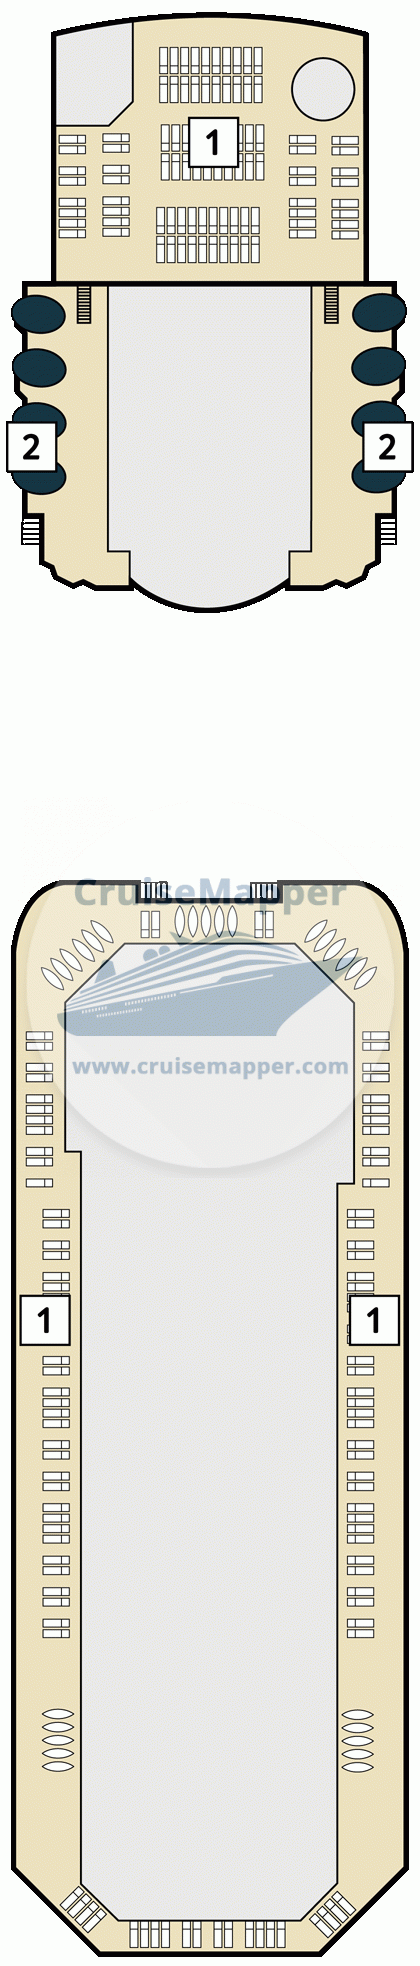 Mein Schiff Herz Deck 24 - Marella Voyager-deck14